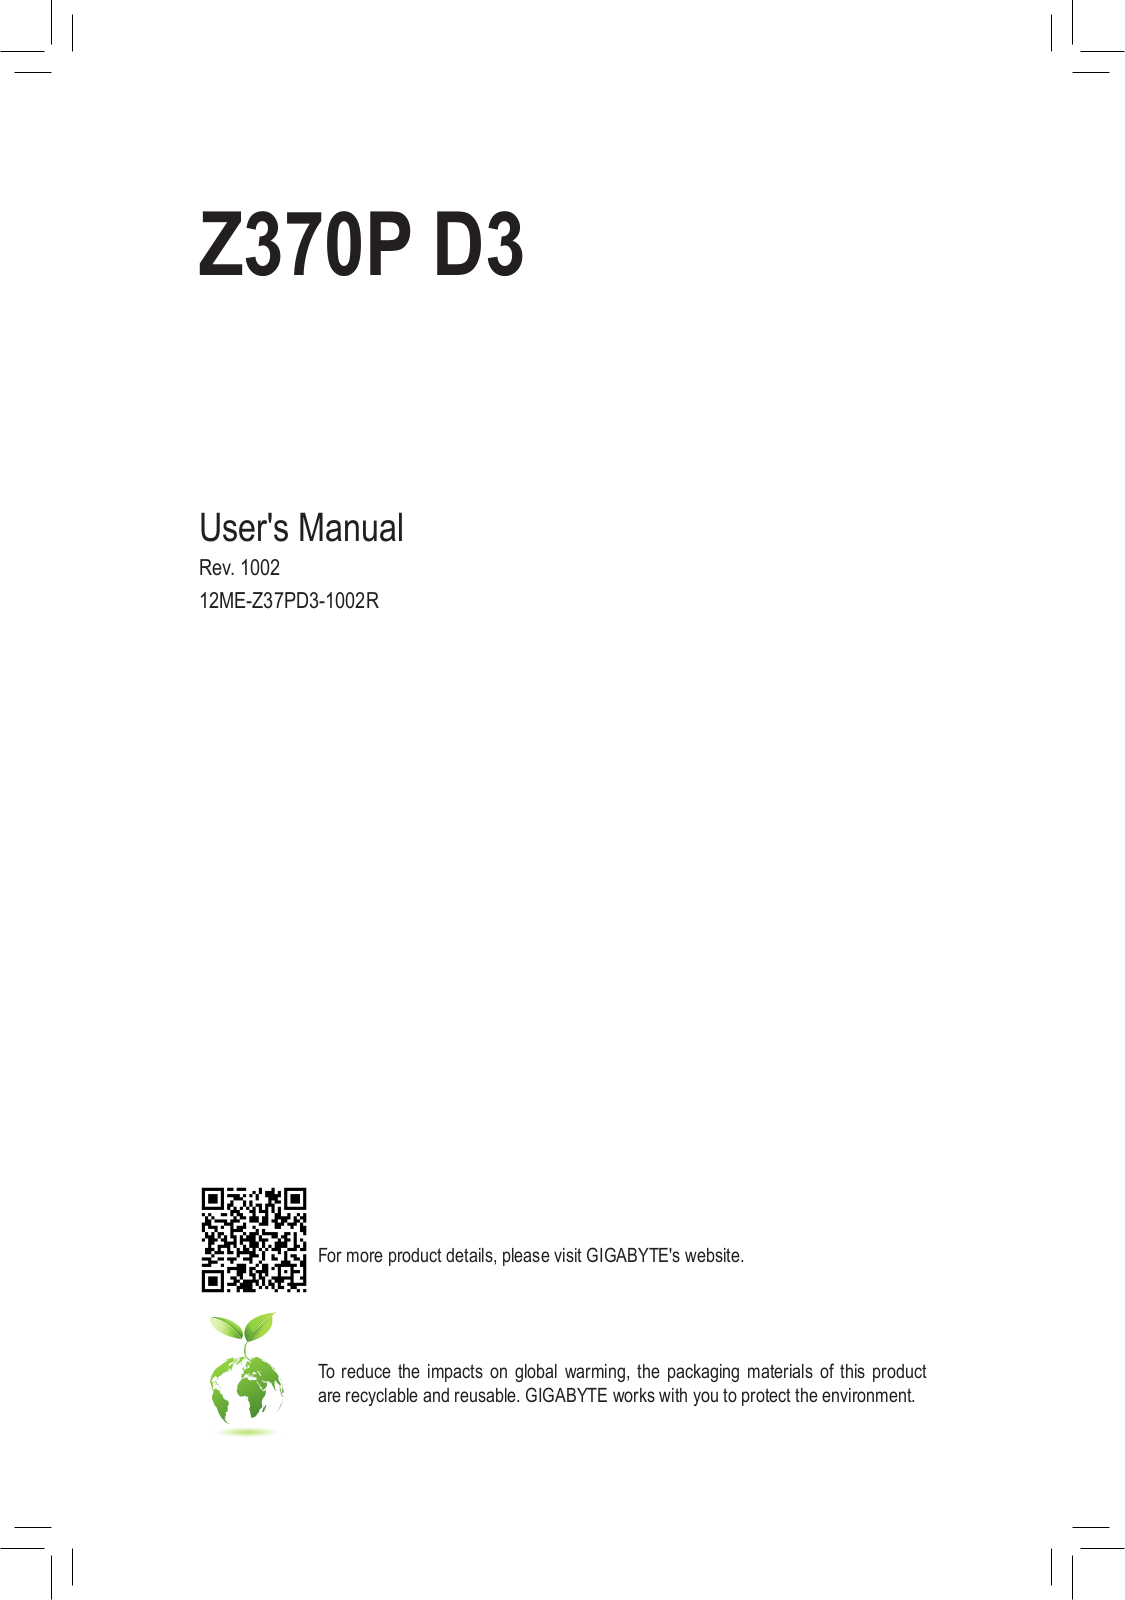 Gigabyte Z370P D3 User Manual